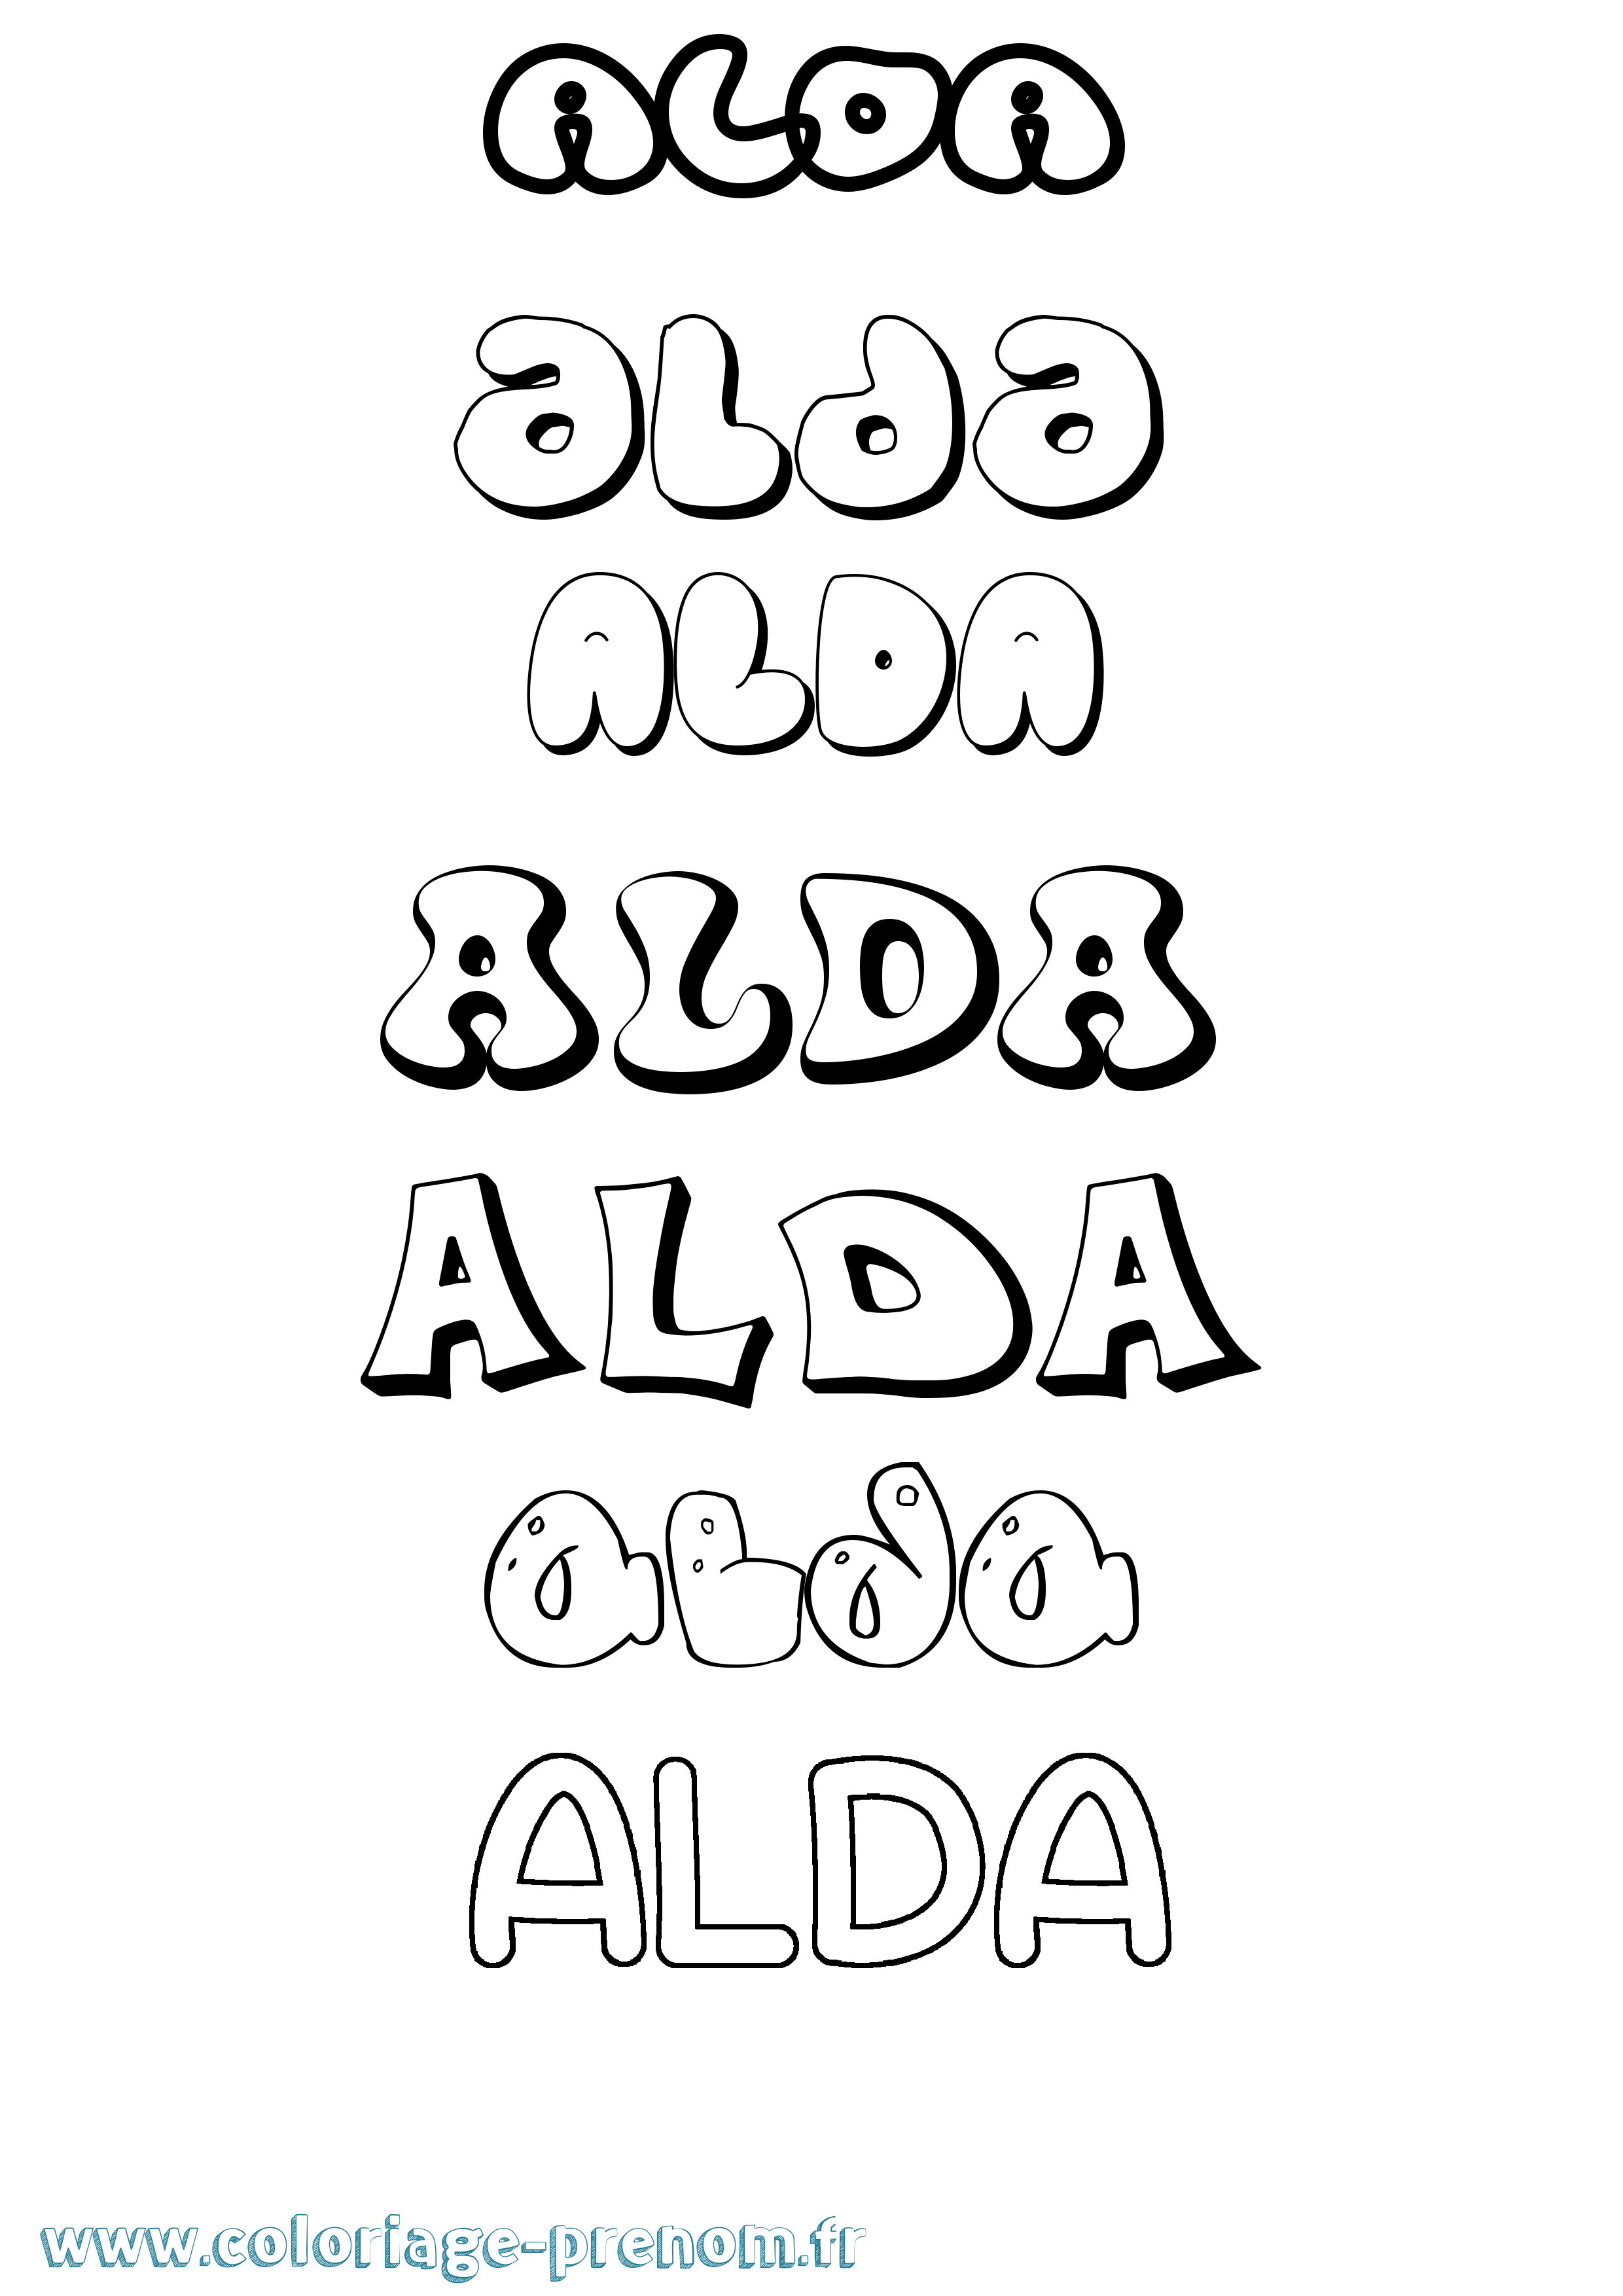 Coloriage prénom Alda Bubble